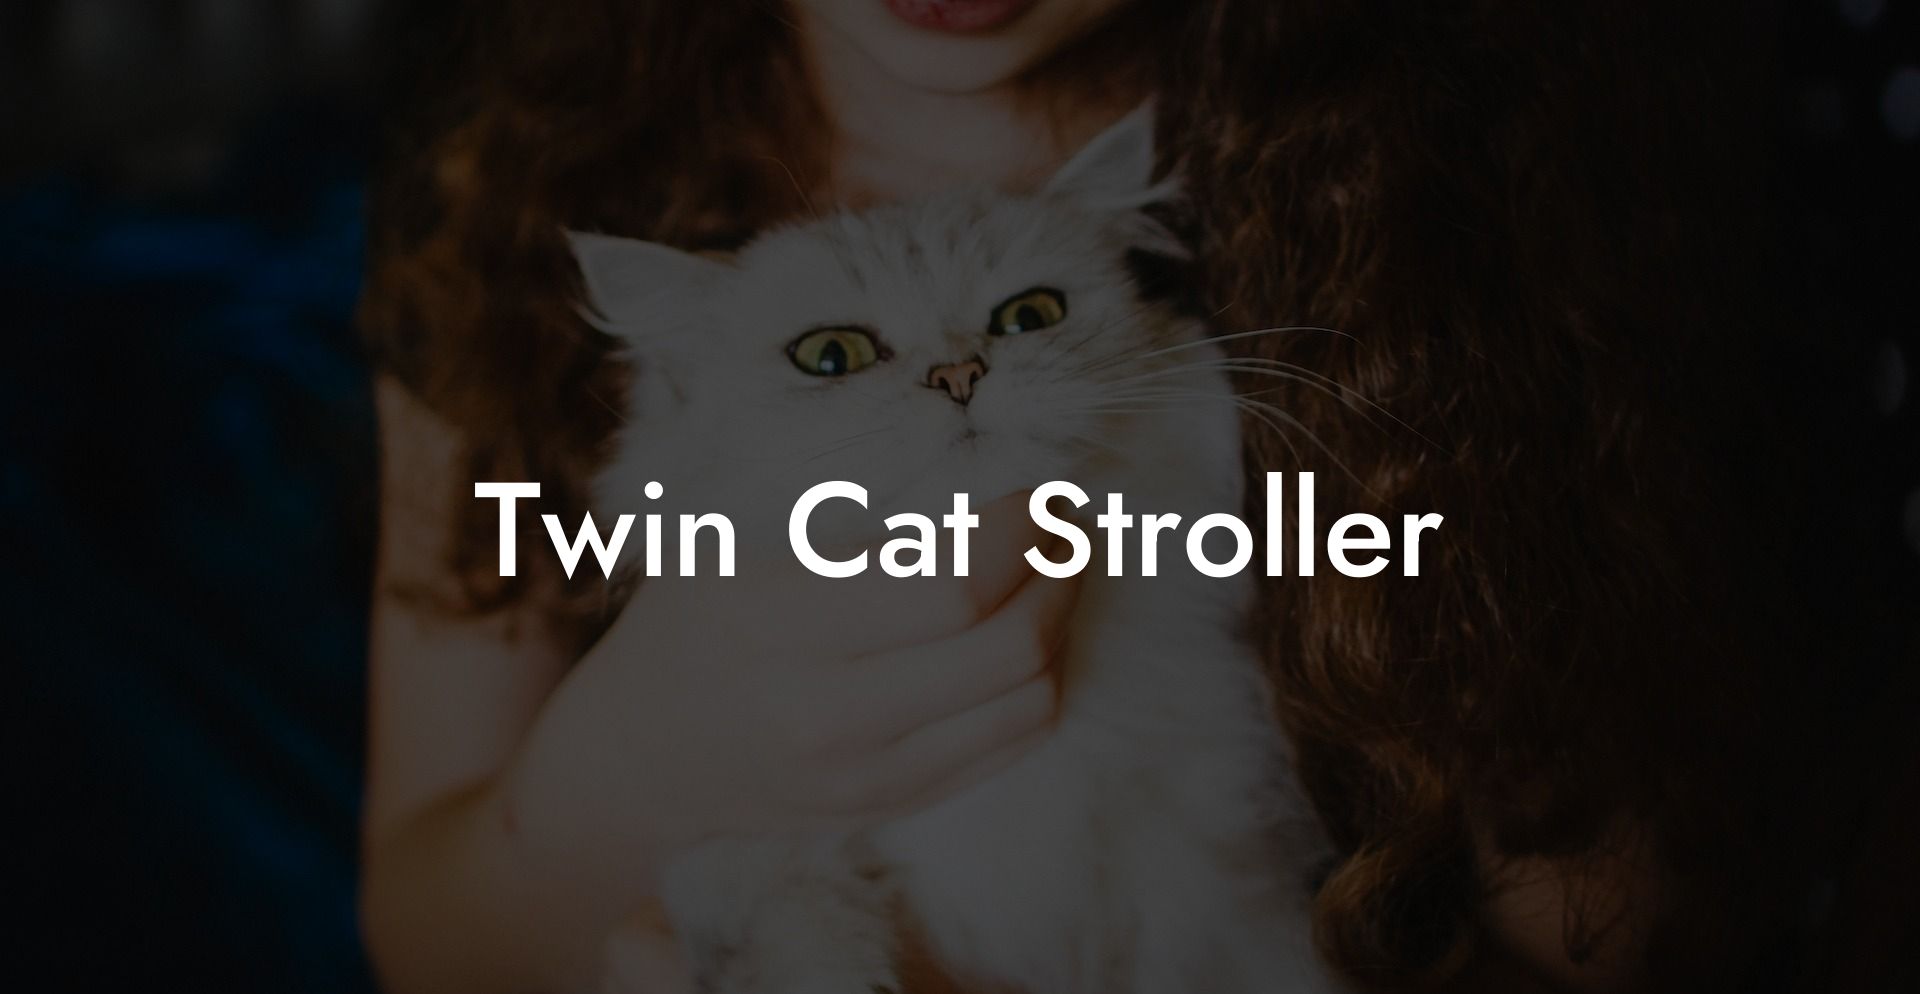 Twin Cat Stroller